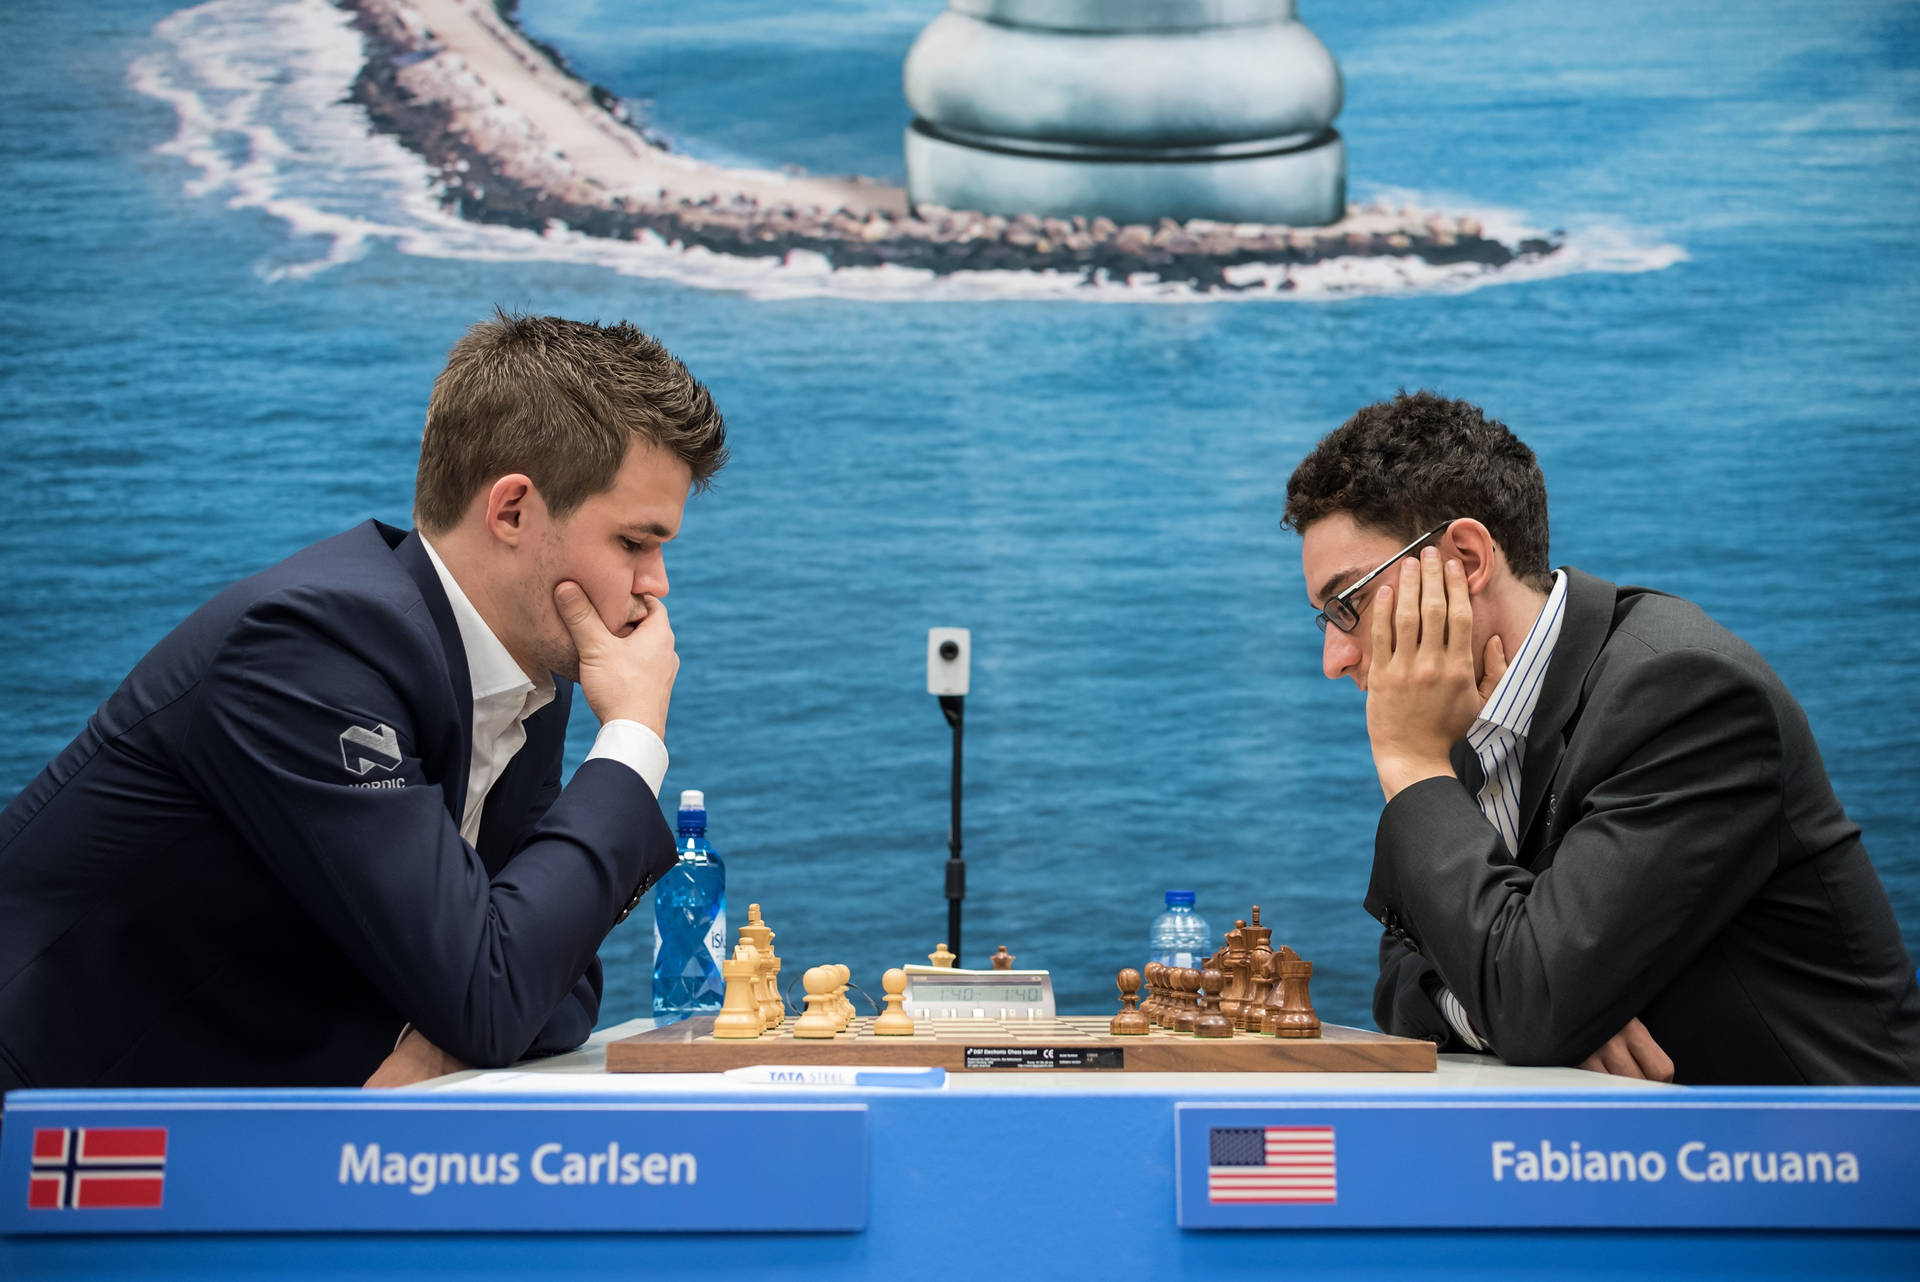 Gør din skrivebord indretning komplet med Magnus Carlsen og Fabiano Caruana! Wallpaper